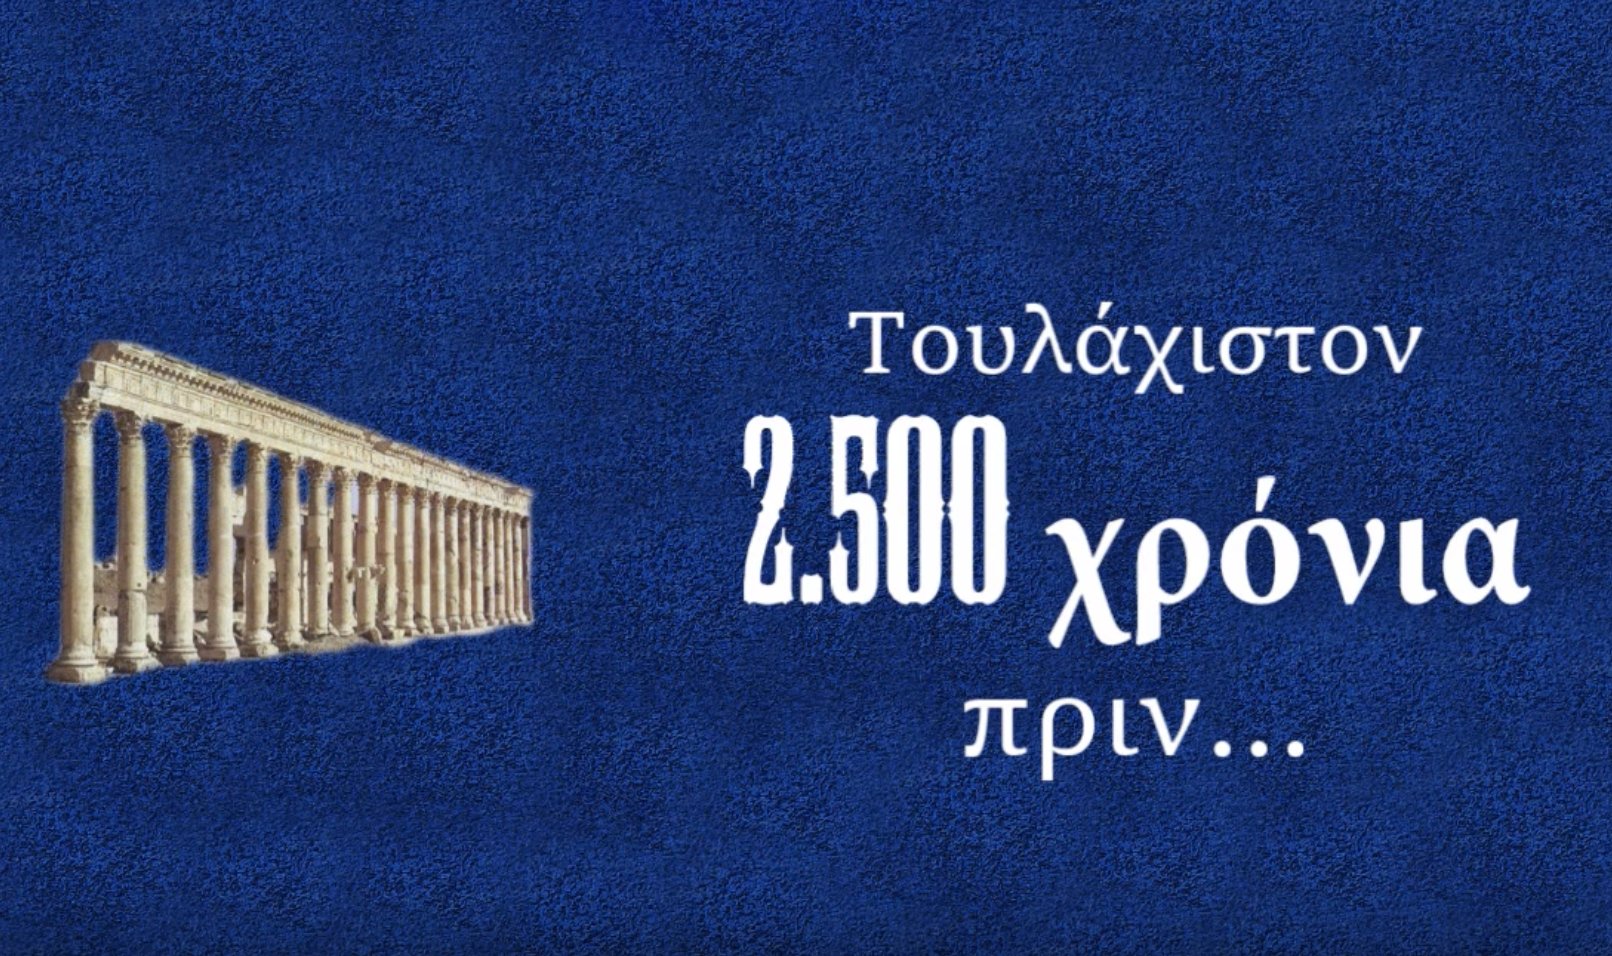 Μεγάλοι λόγιοι και ακαδημαϊκοί σε όλο τον κόσμο ηχούν: Μακεδονία γη ΕΛΛΗΝΙΚΗ!!!